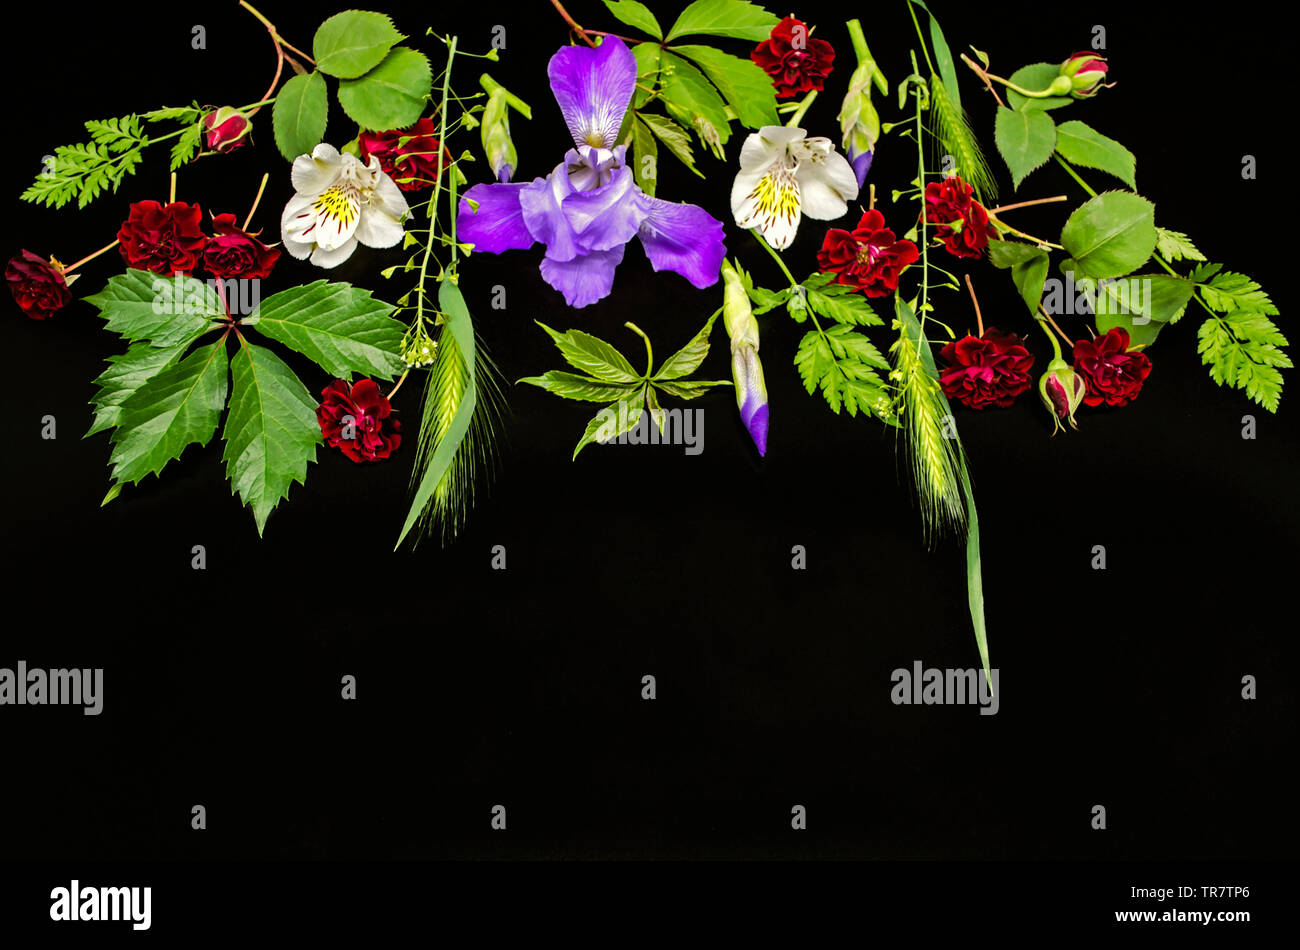 Eine Gruppe von hellen Blüten mit kleinen Rosen, lila Iris mit Knospen, Inkalilie, wilde Weinblättern und verschiedenen Kräutern auf einem schwarzen Hintergrund Stockfoto